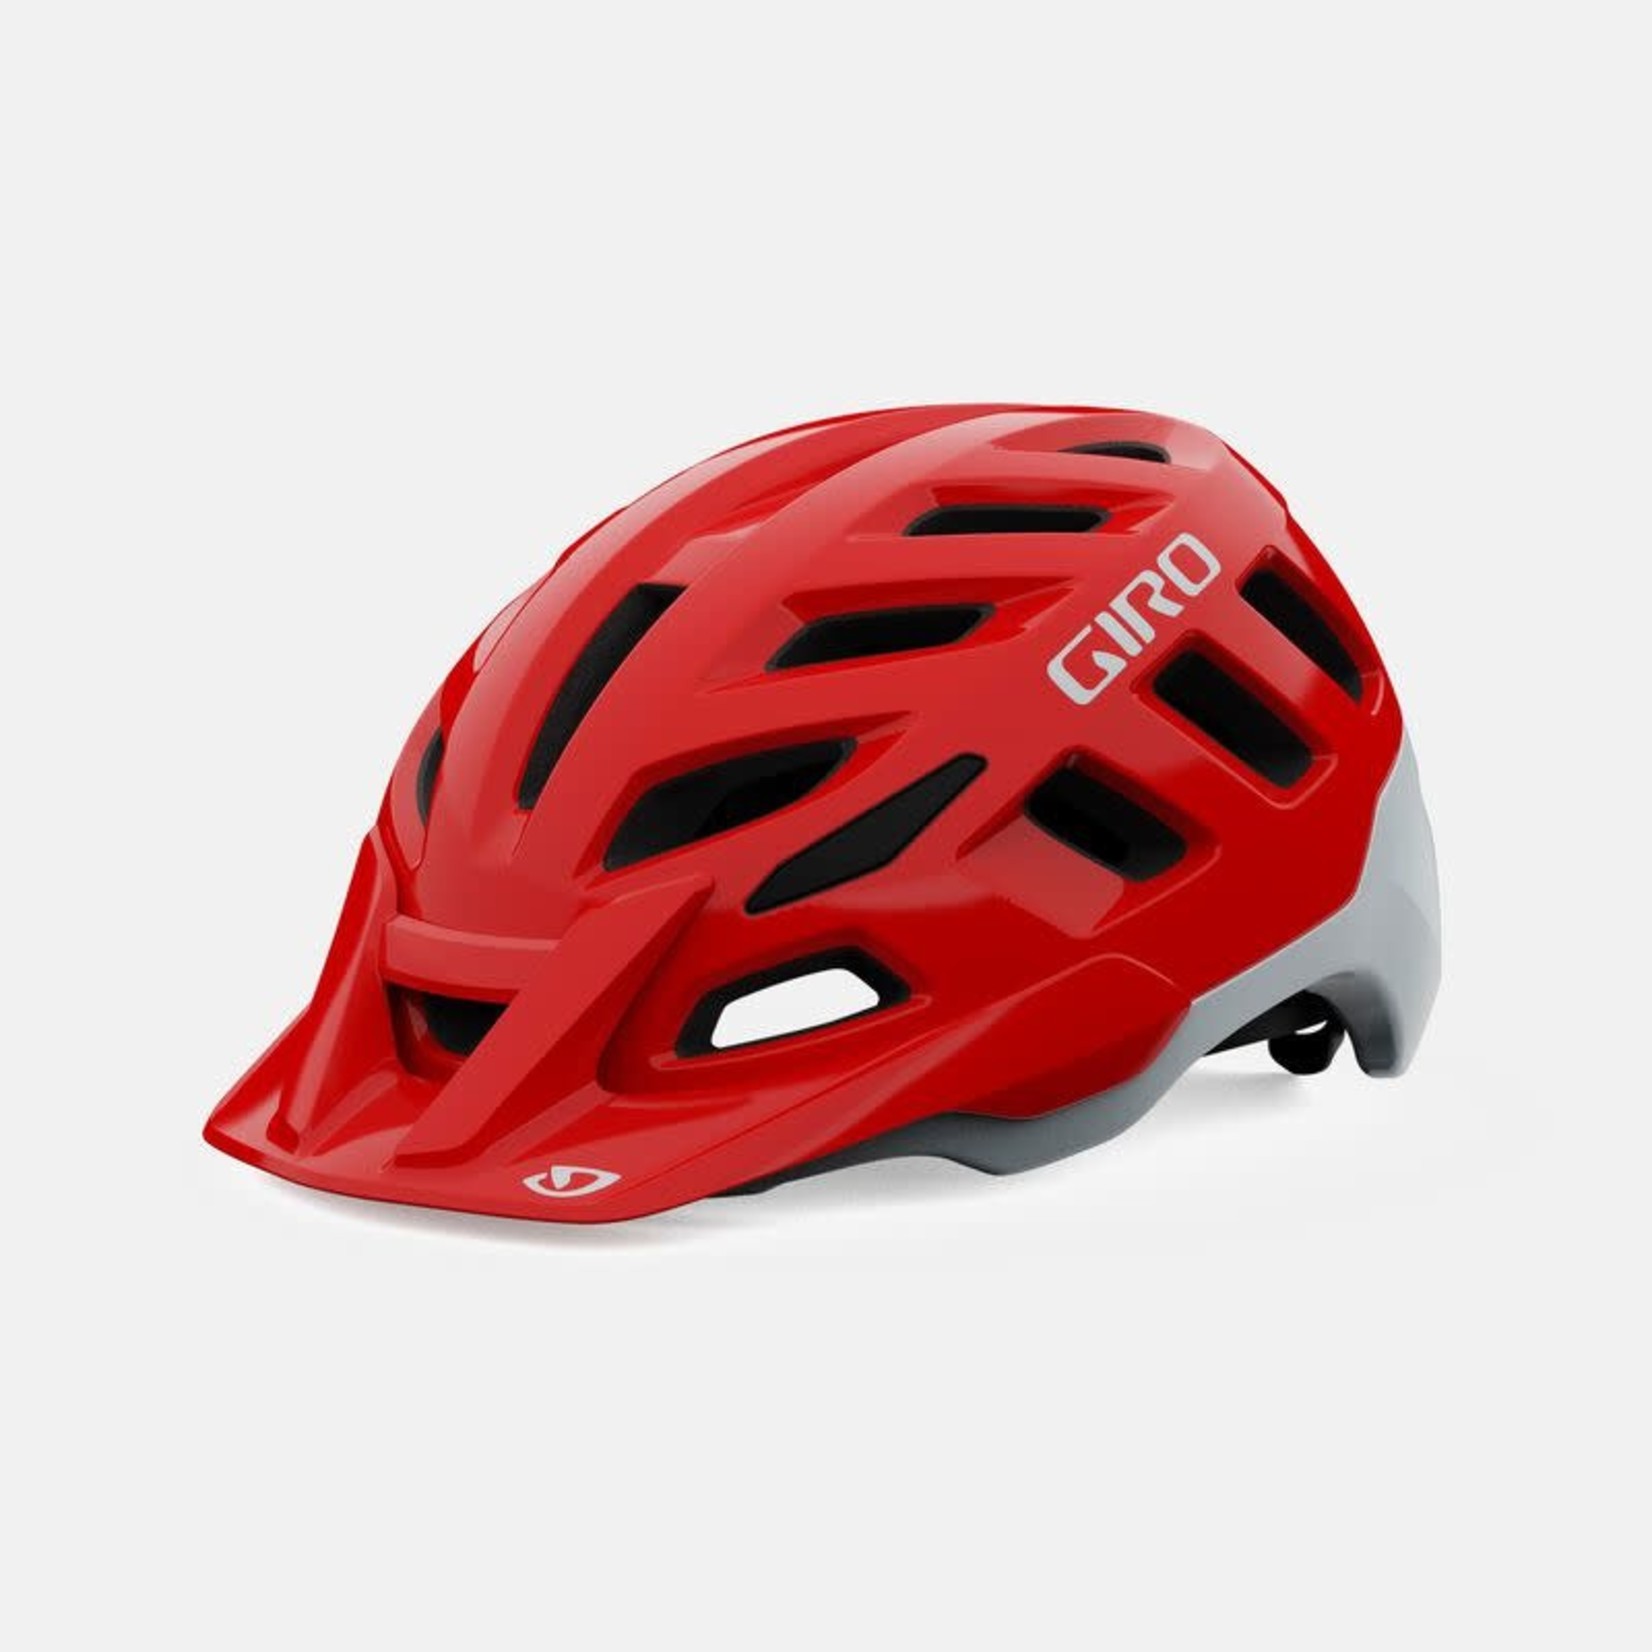 Giro GIRO, Radix MIPS Helmet